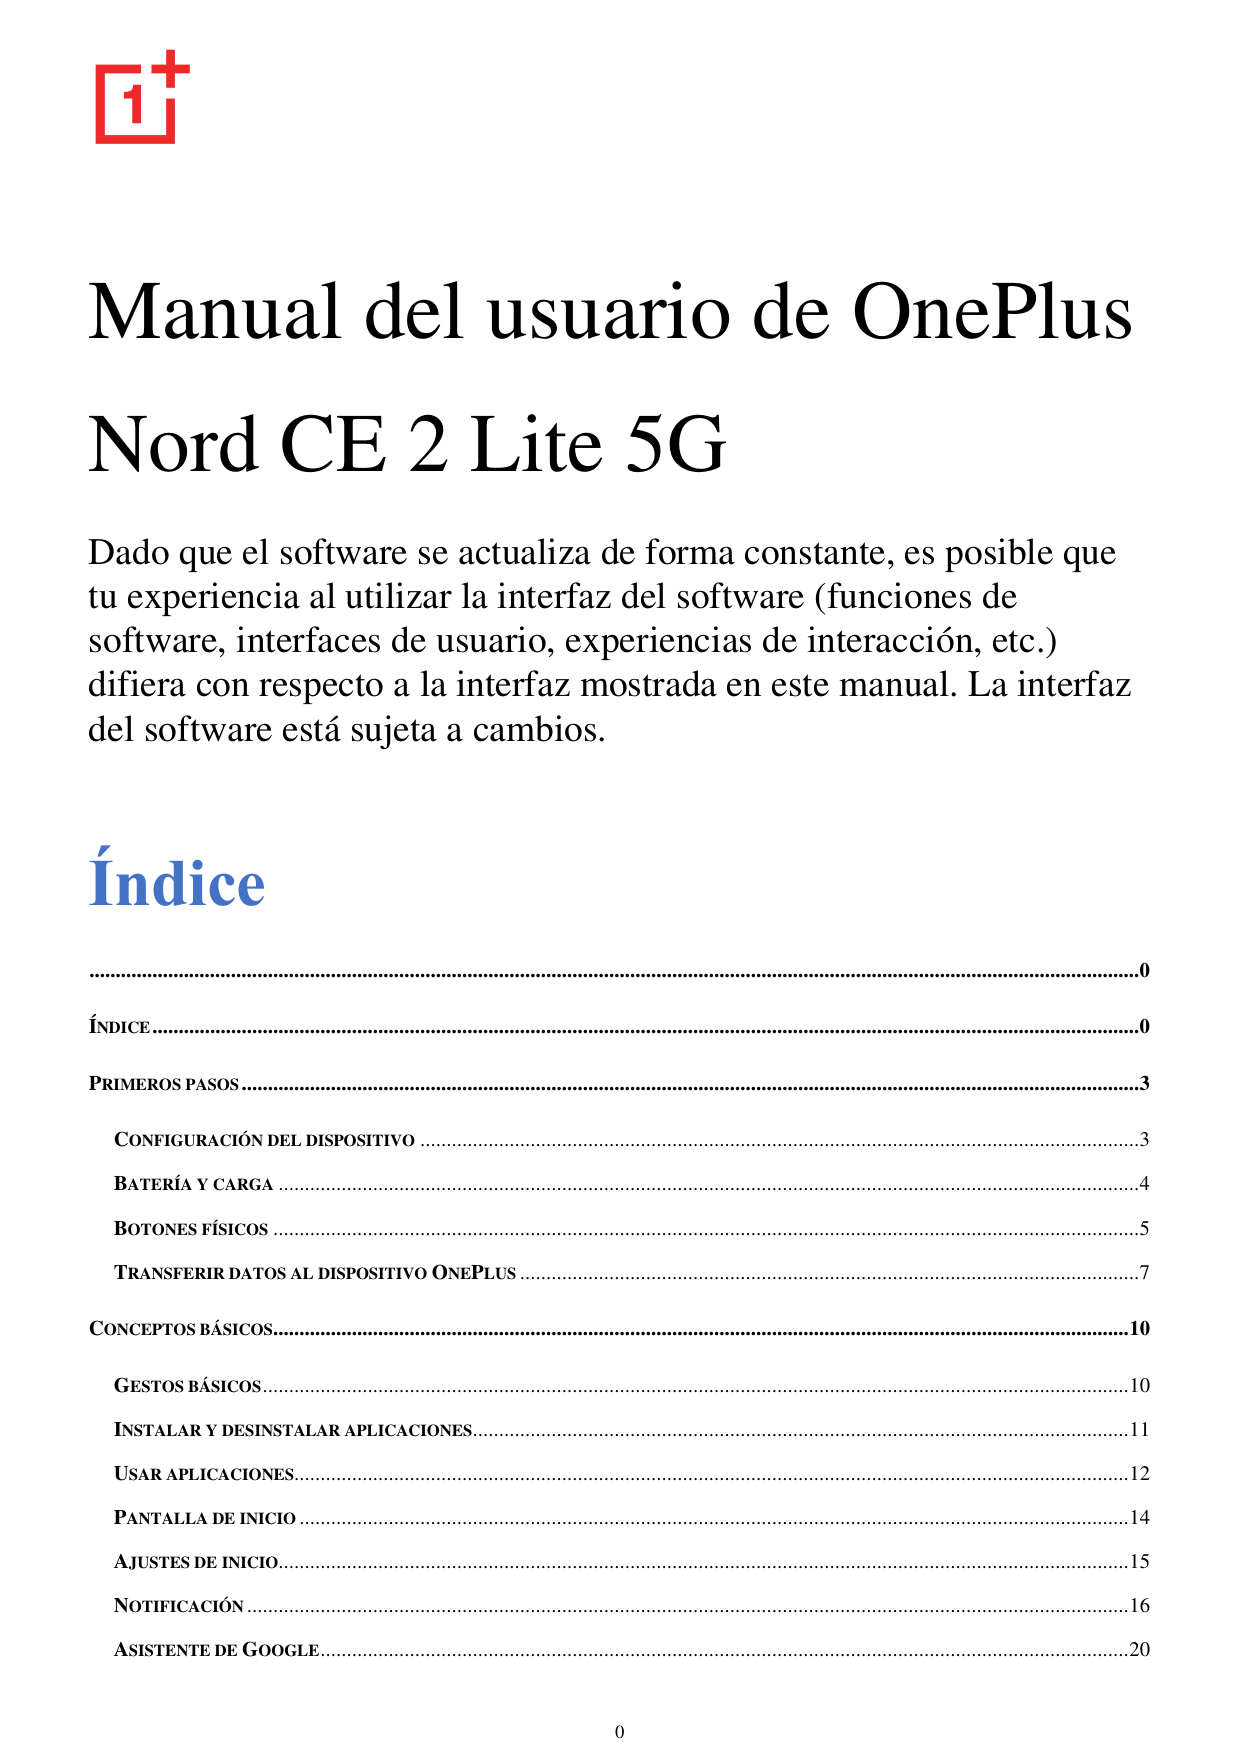 Manual del usuario de OnePlusNord CE 2 Lite 5GDado que el software se actualiza de forma constante, es posible quetu experiencia